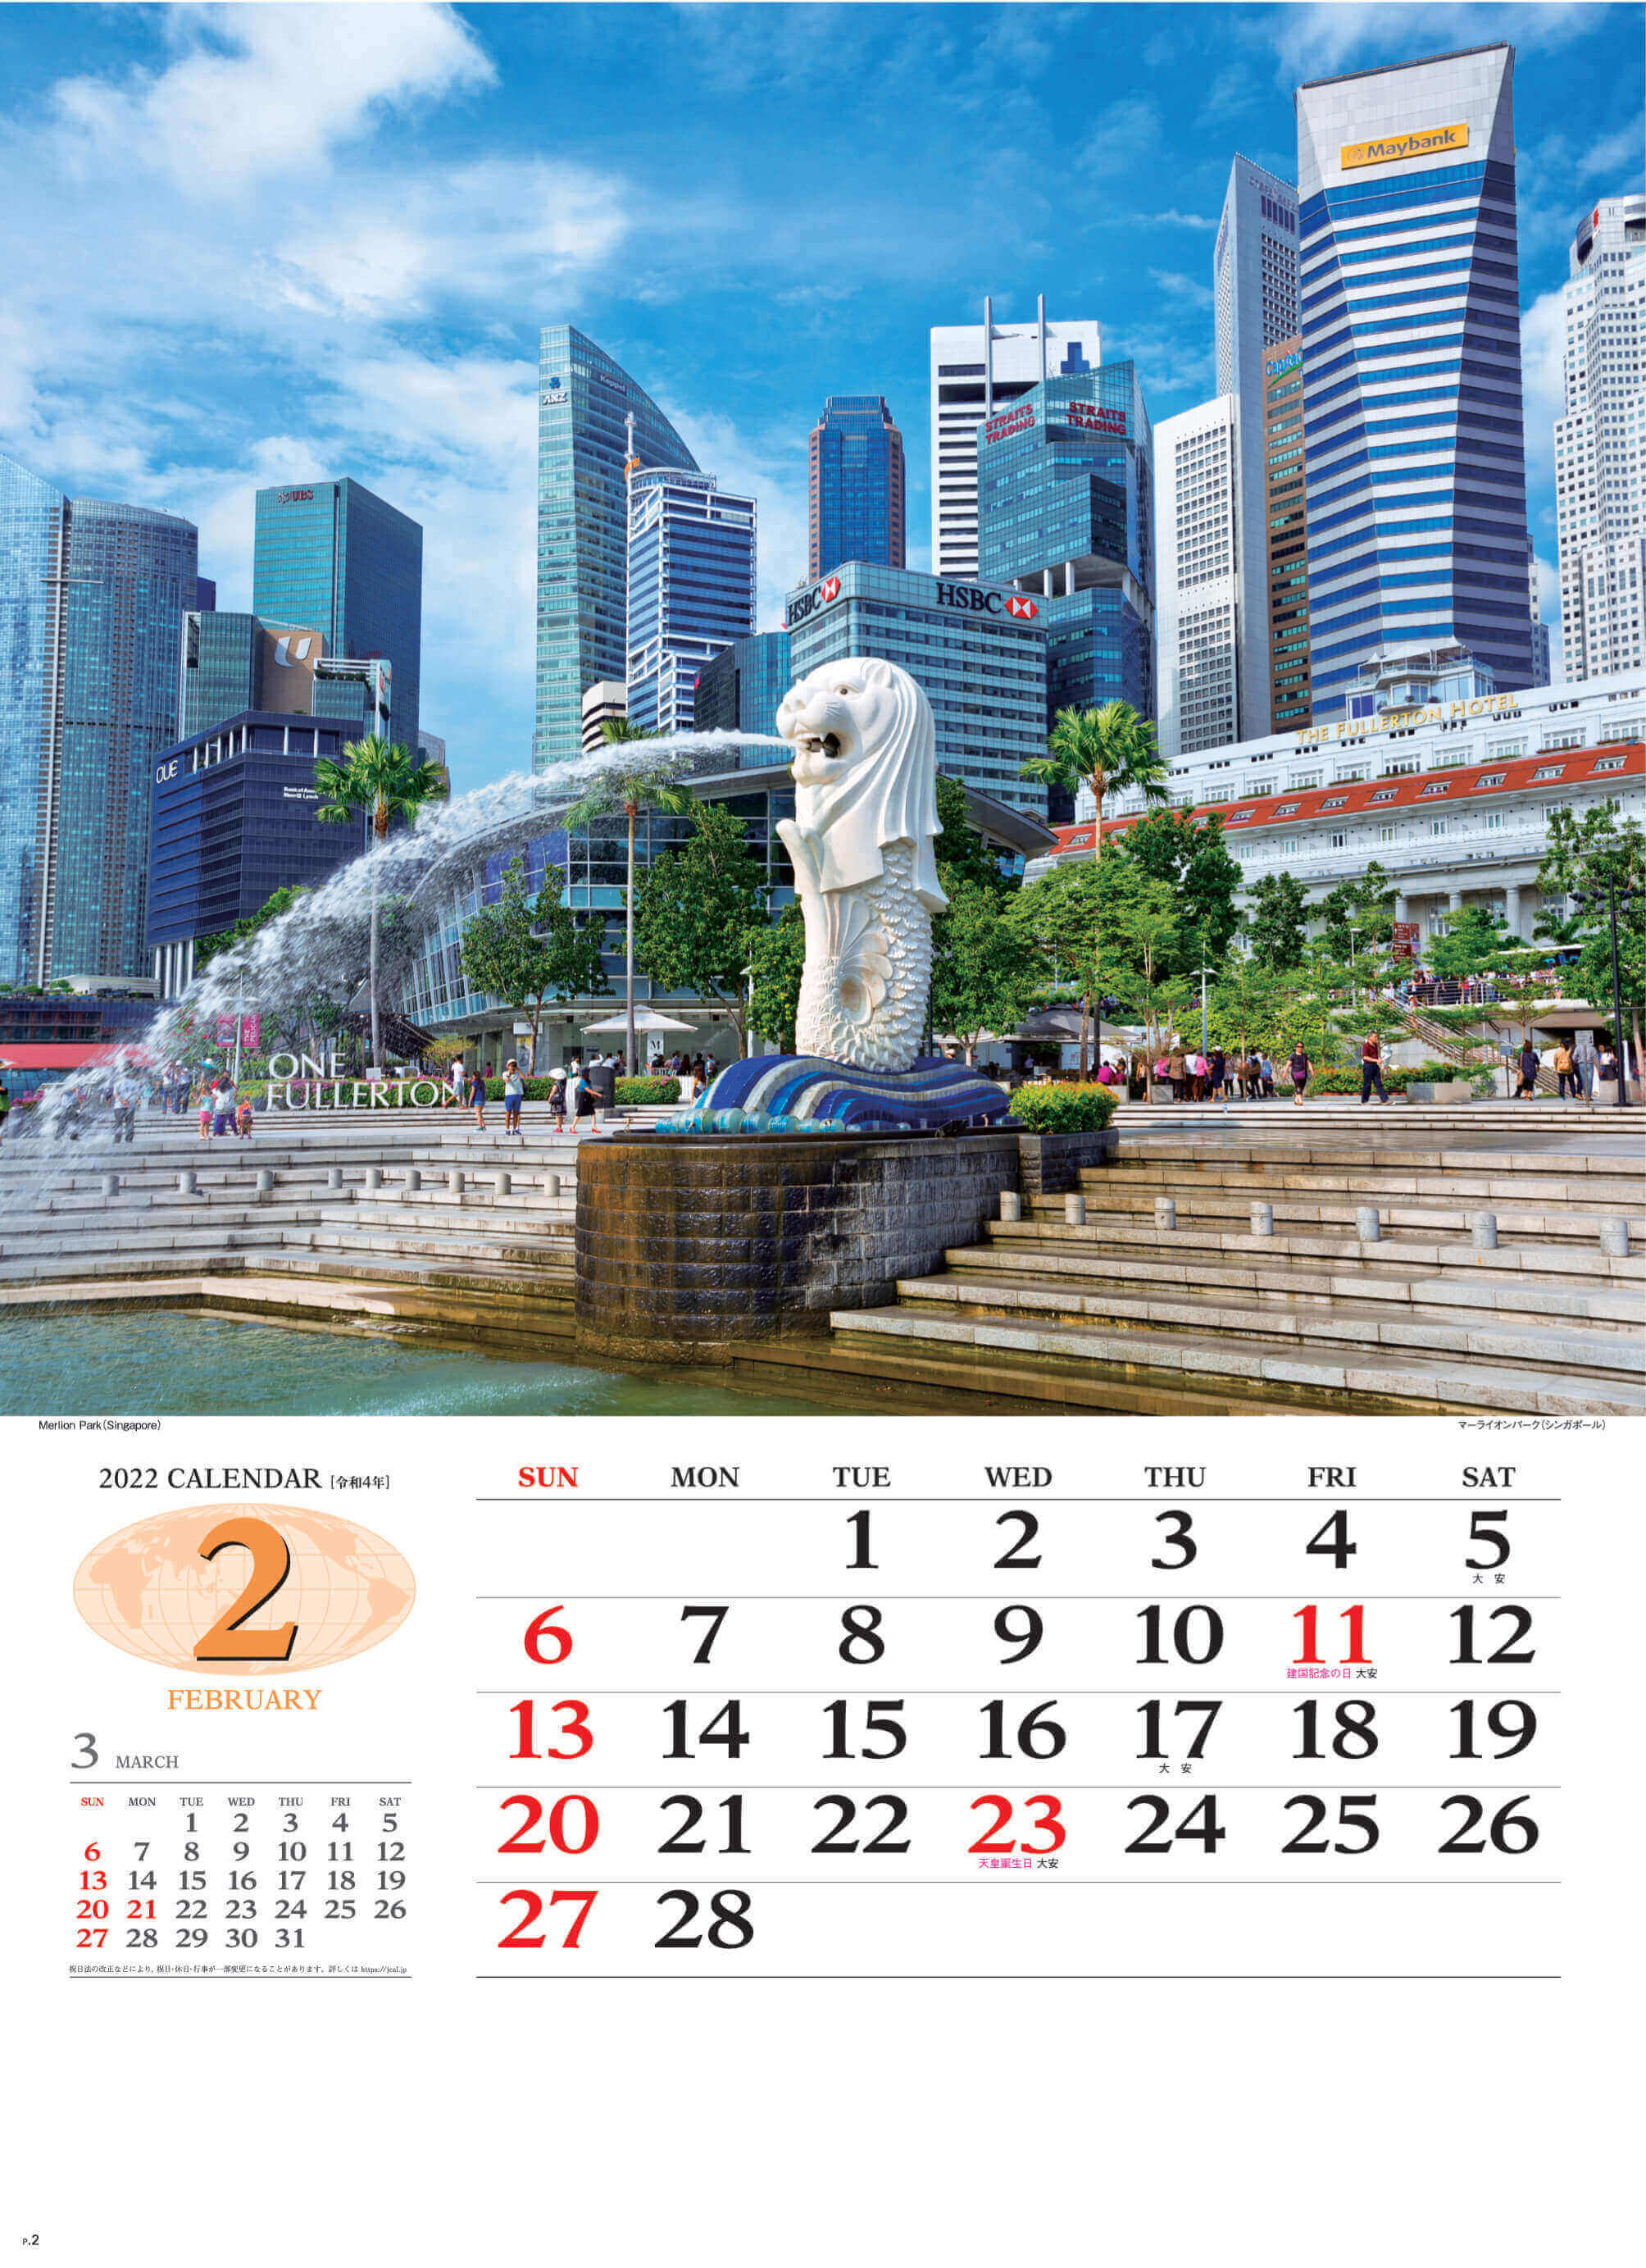 2月 マーライオンパーク シンガポール 世界の景観 2022年カレンダーの画像